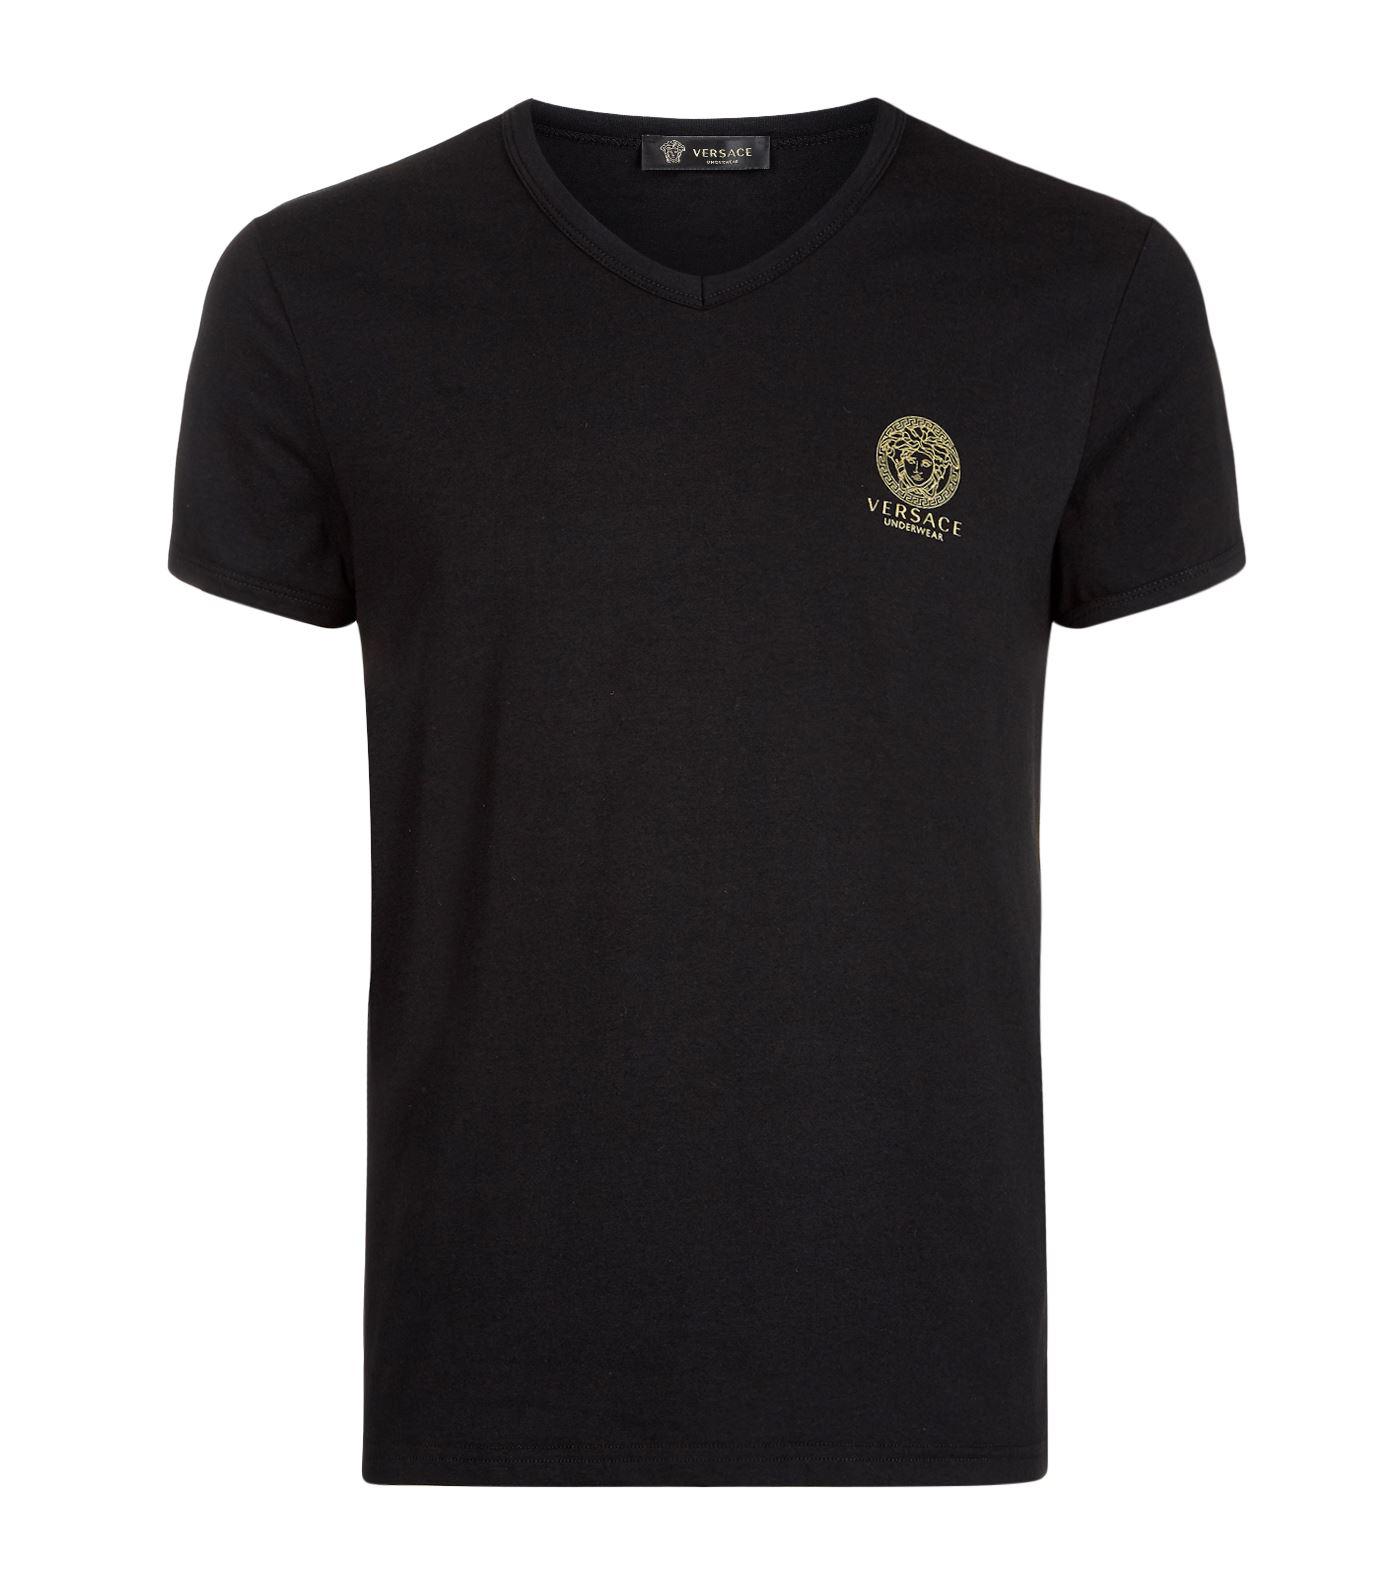 Versace Cotton Iconic Medusa V-neck T-shirt in Black for Men - Lyst